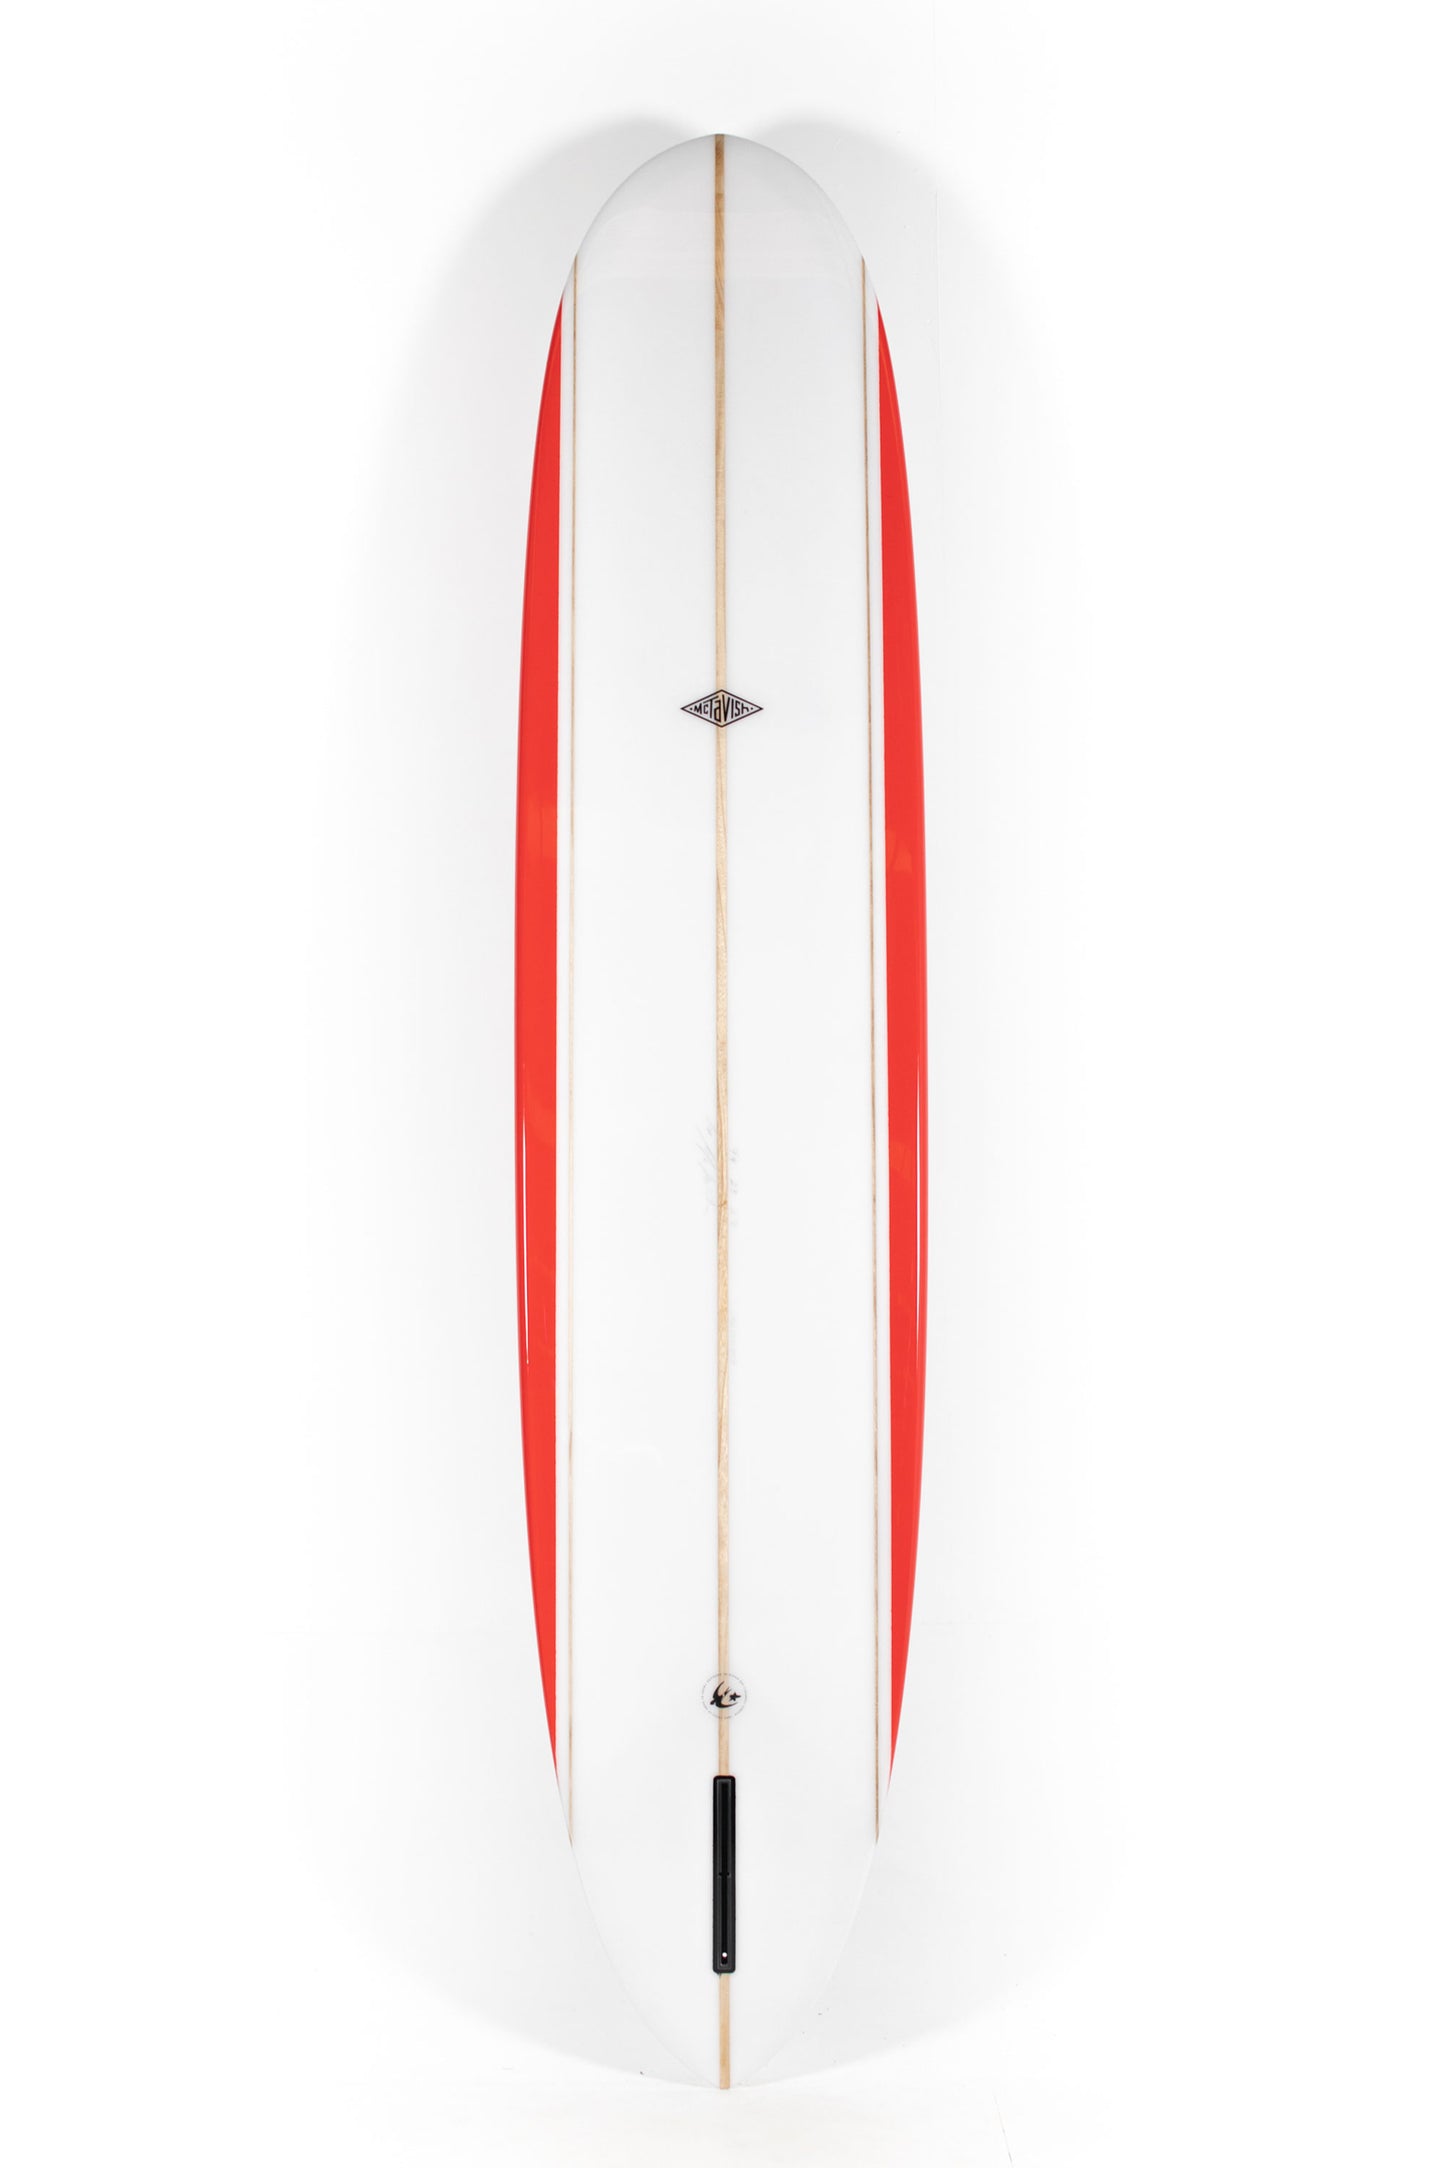 Pukas Surf Shop - McTavish Surfboard - PINNACLE by Bob McTavish - 9'4" x 23 x 2 7/8 - BM00782